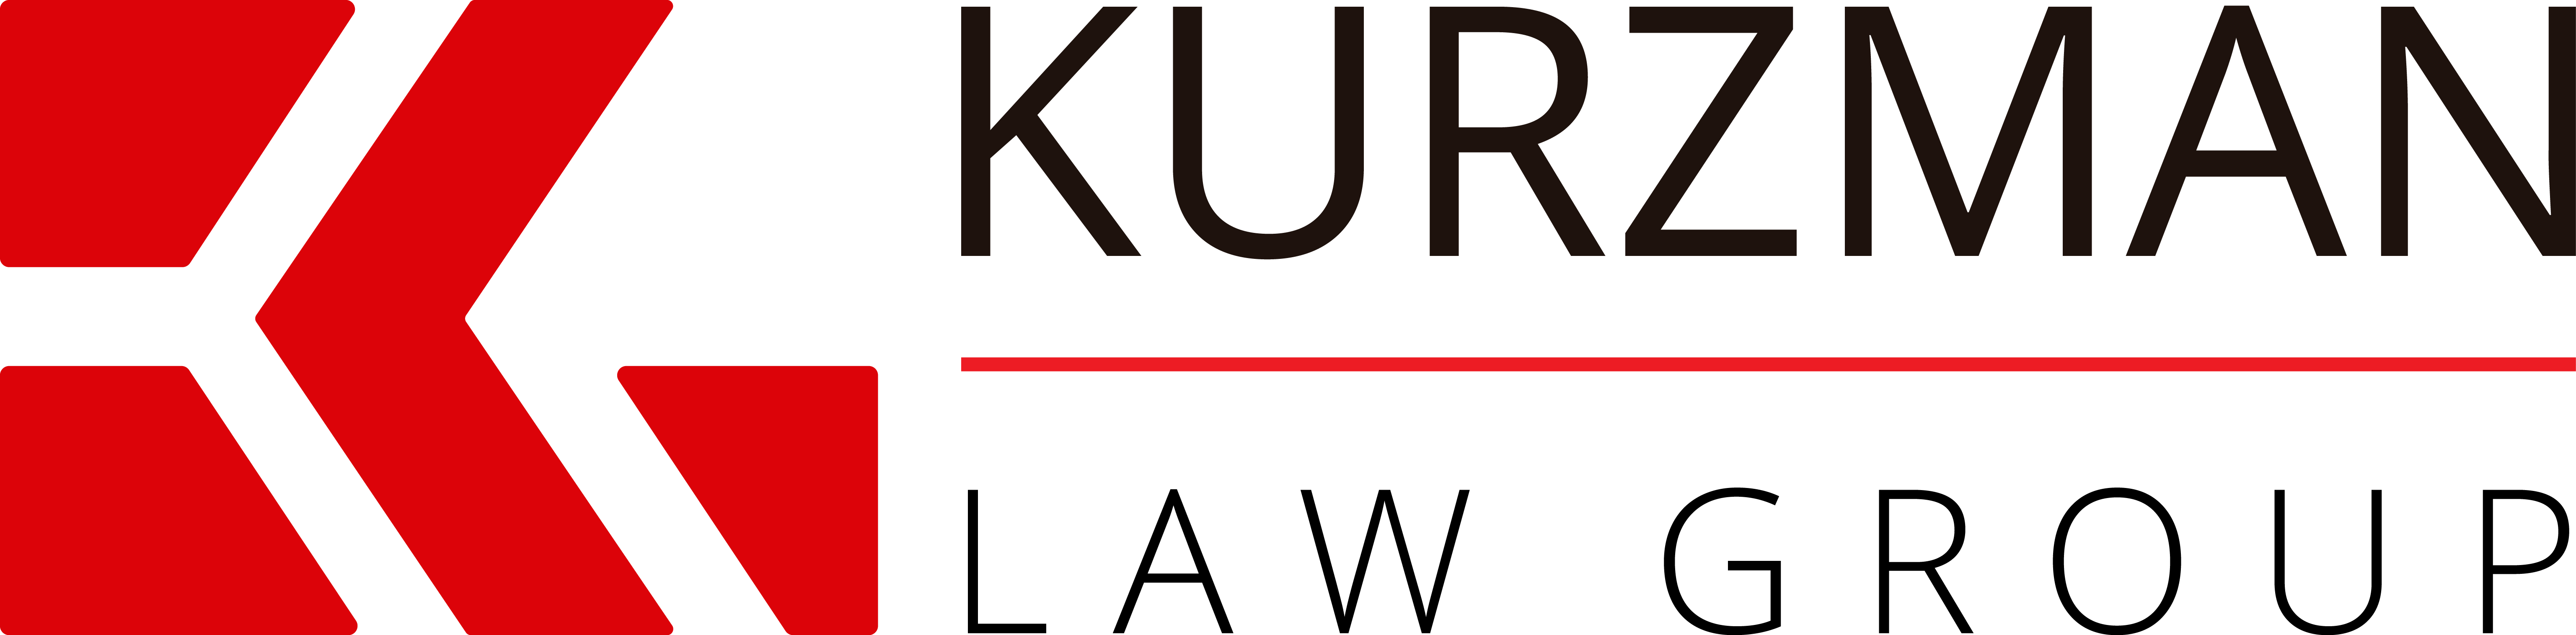 Kurzman Law Group, P.A. Profile Picture